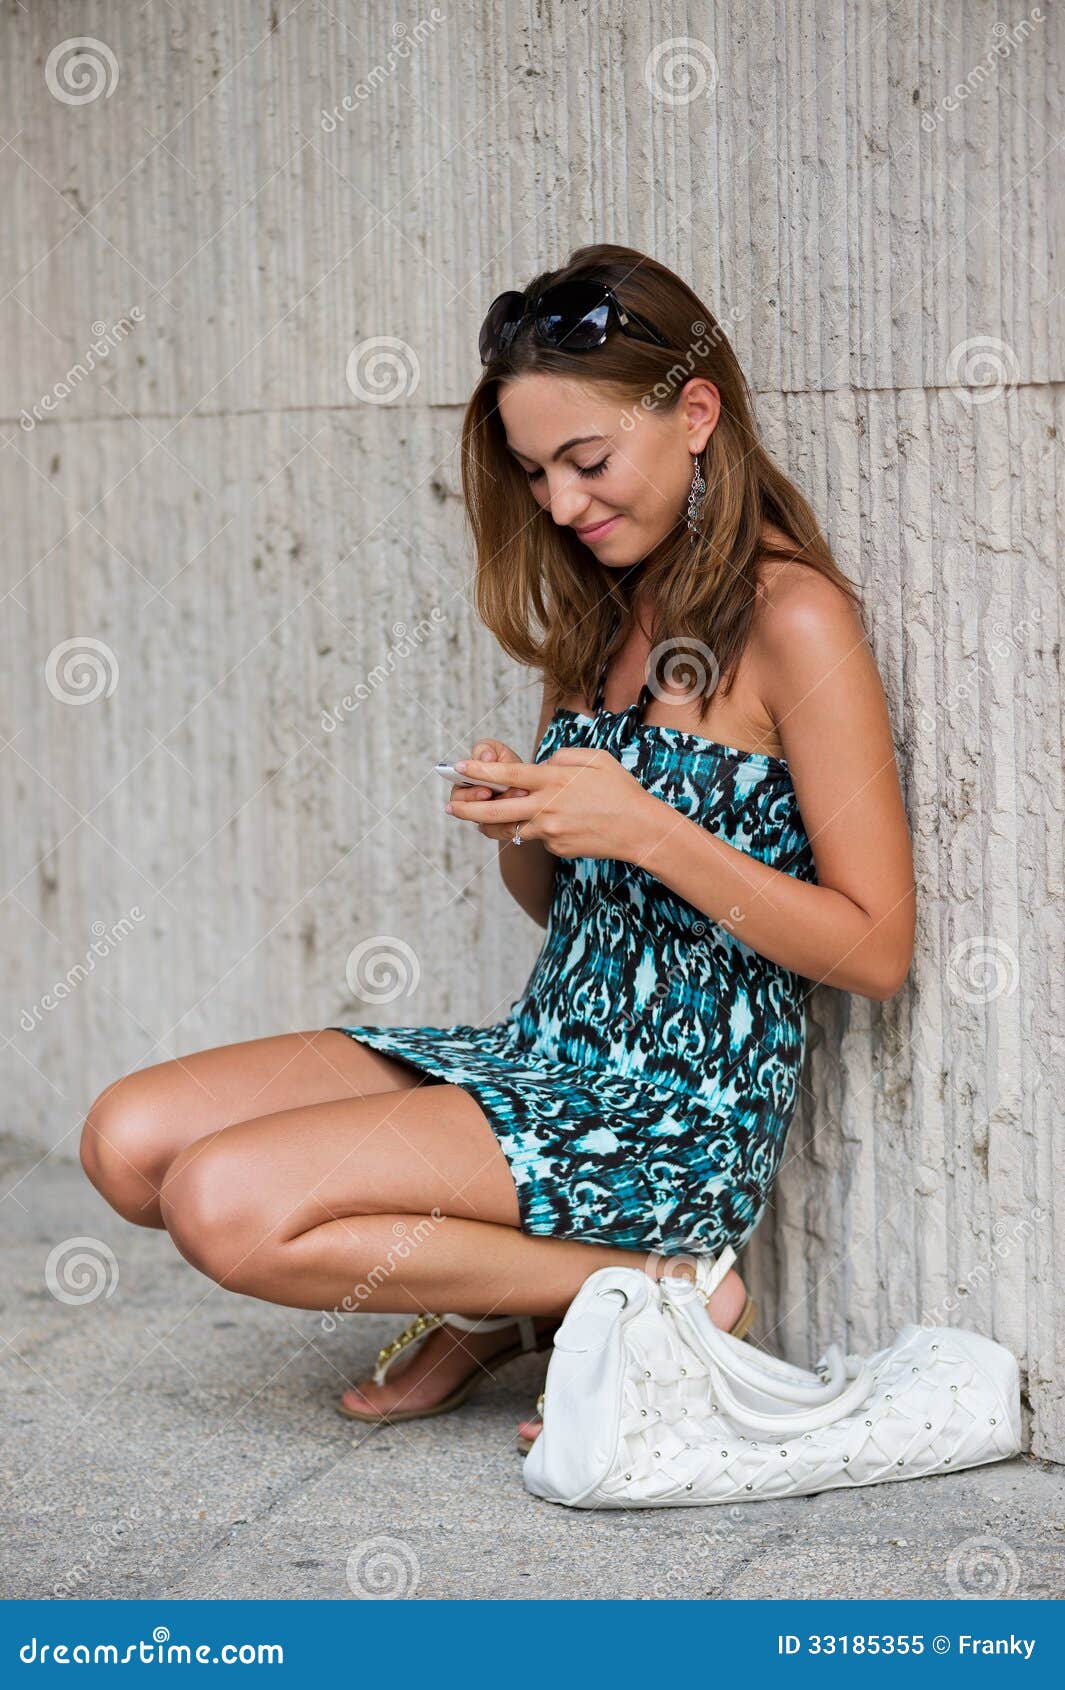 Młoda Modna dziewczyna Wyszukuje internet Z Jej telefonem komórkowym (21). Młoda Studencka dziewczyna Wyszukuje internet Z Jej telefonem komórkowym w Miastowym środowisku (21)